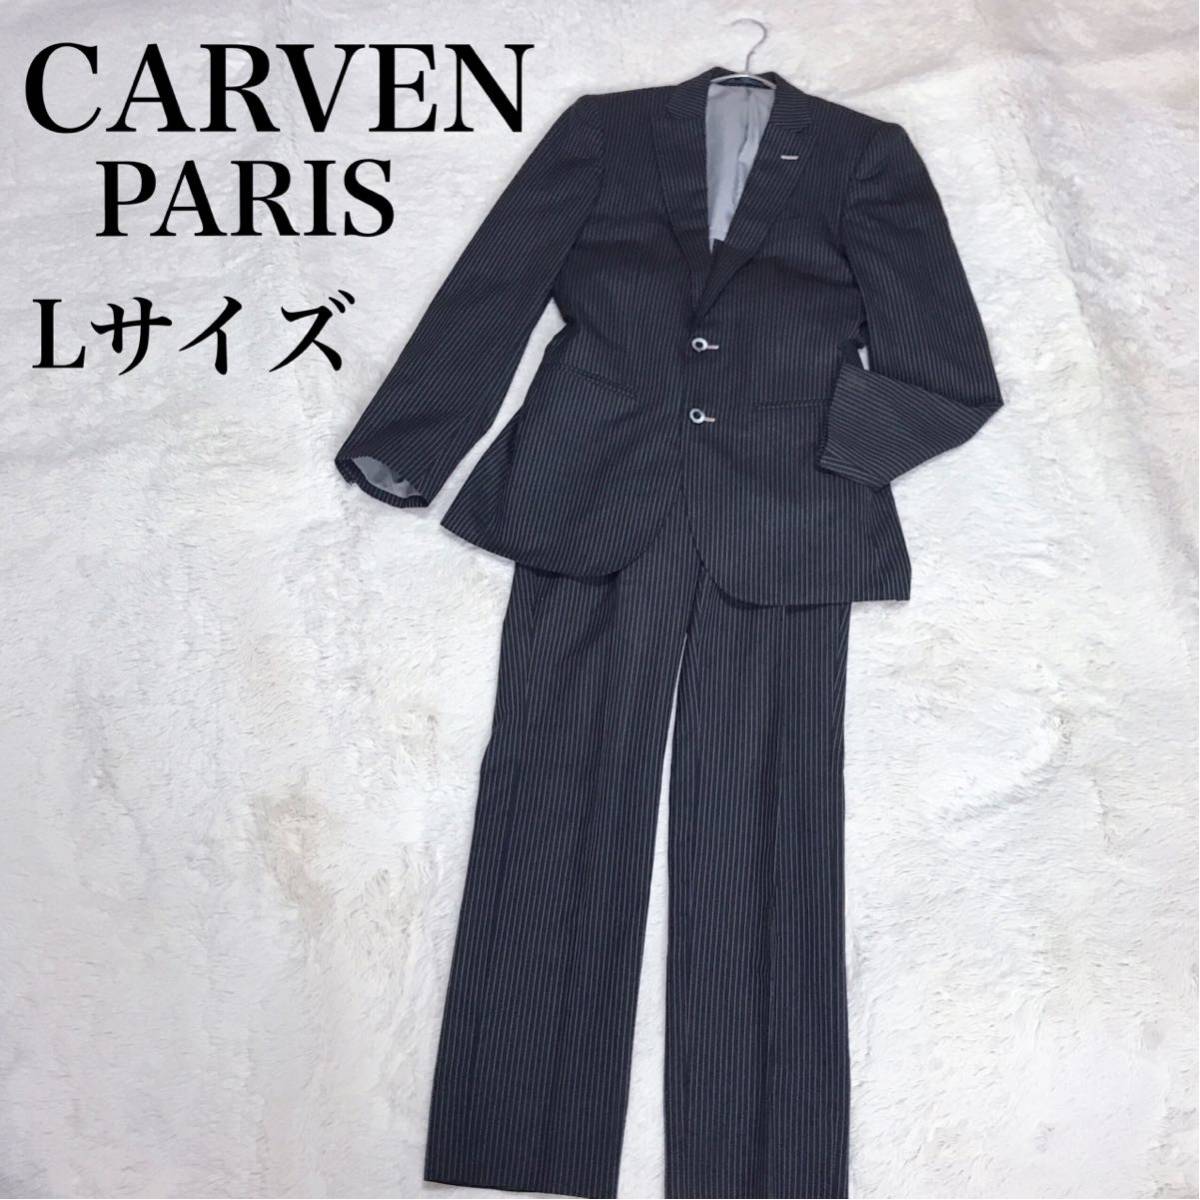 CARVEN Paris ストライプ セットアップ スーツ ジャケット パンツ カルヴェン_画像1